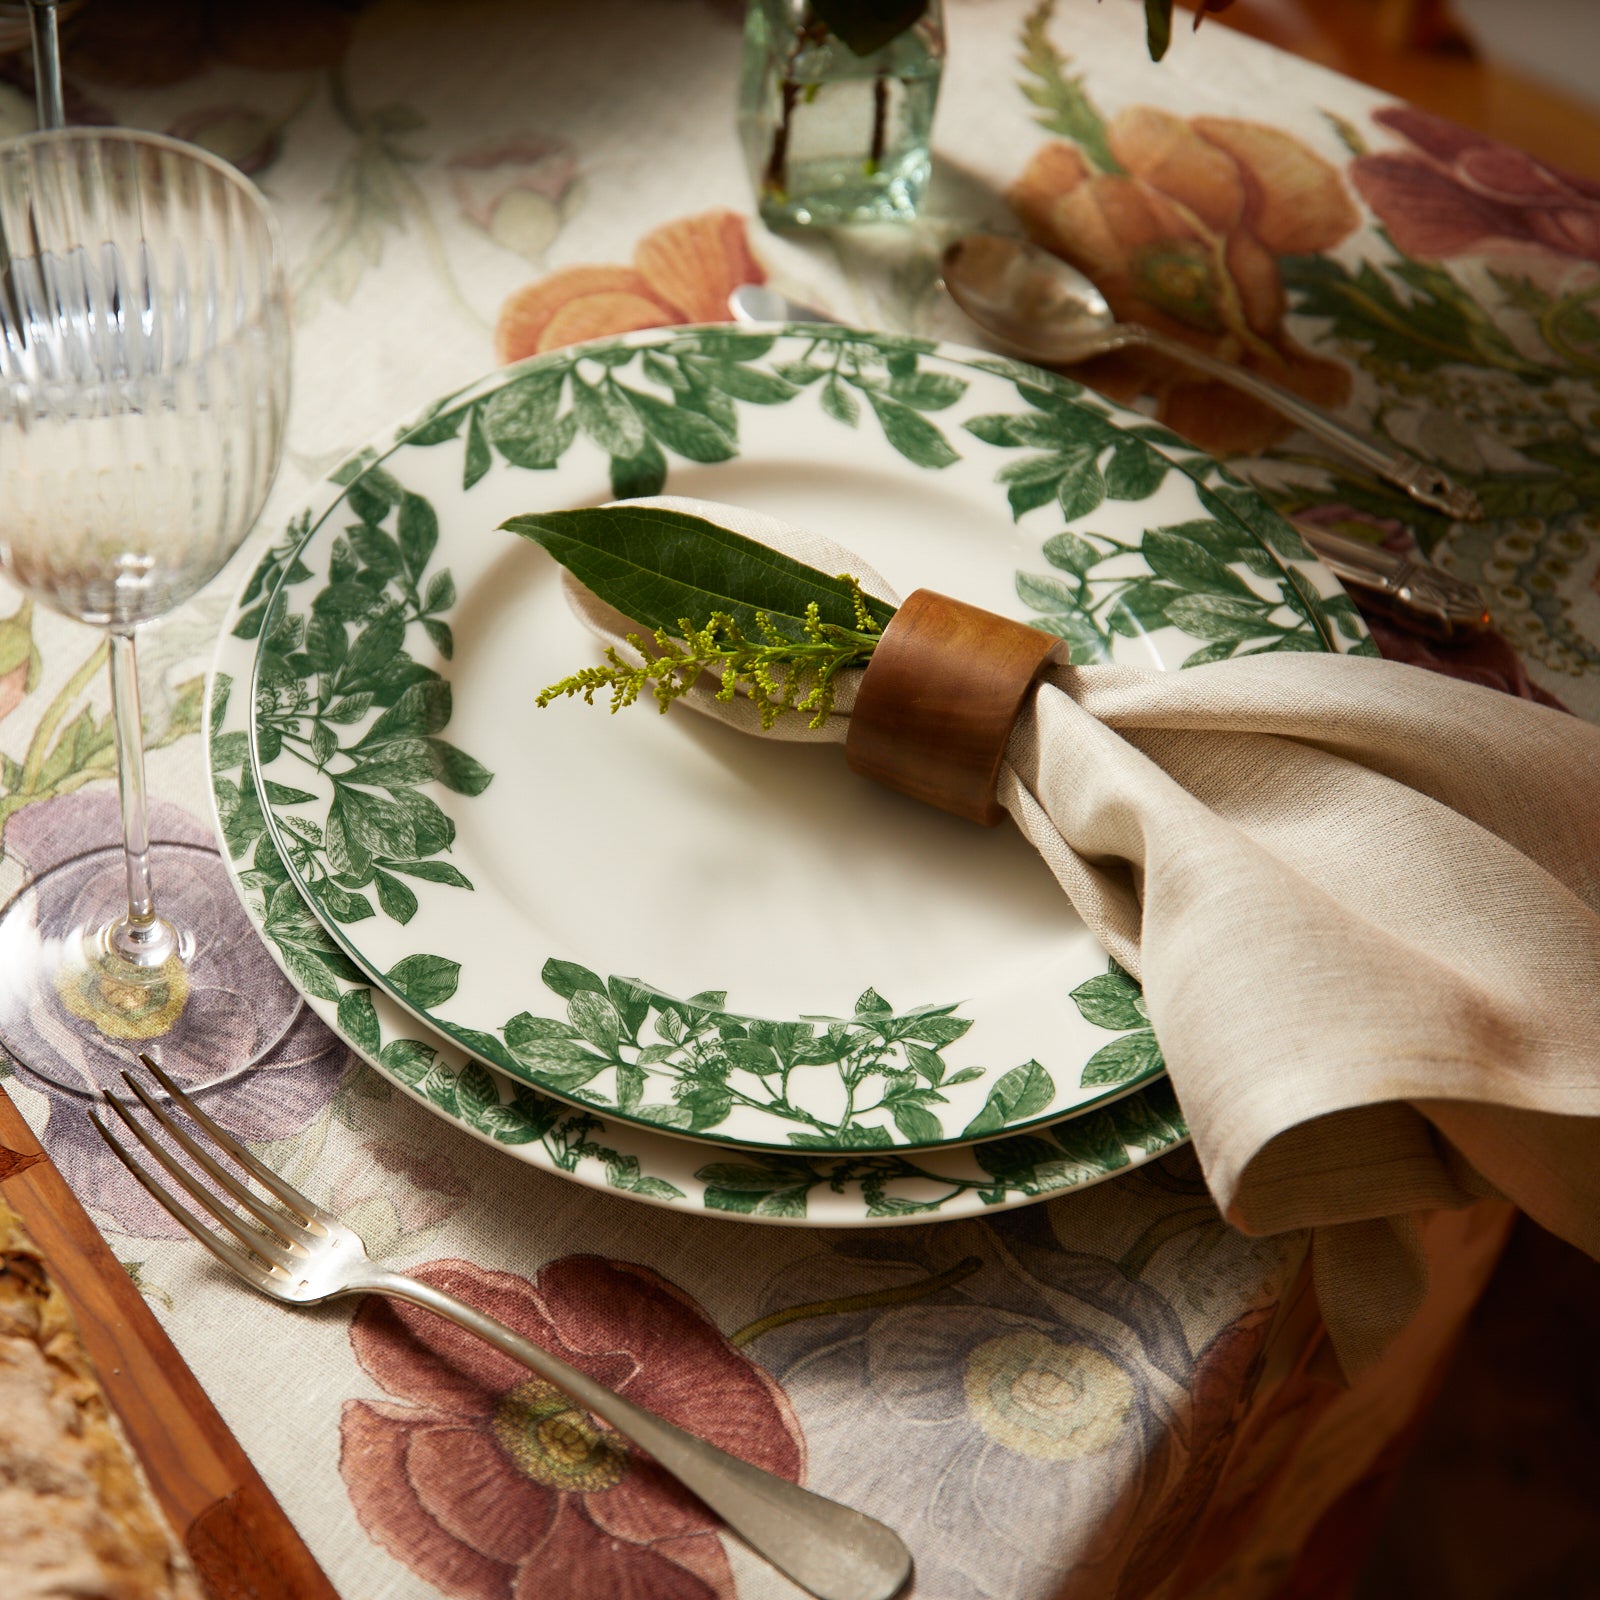 Arbor Green Porcelain Dinner Plate from Caskata.